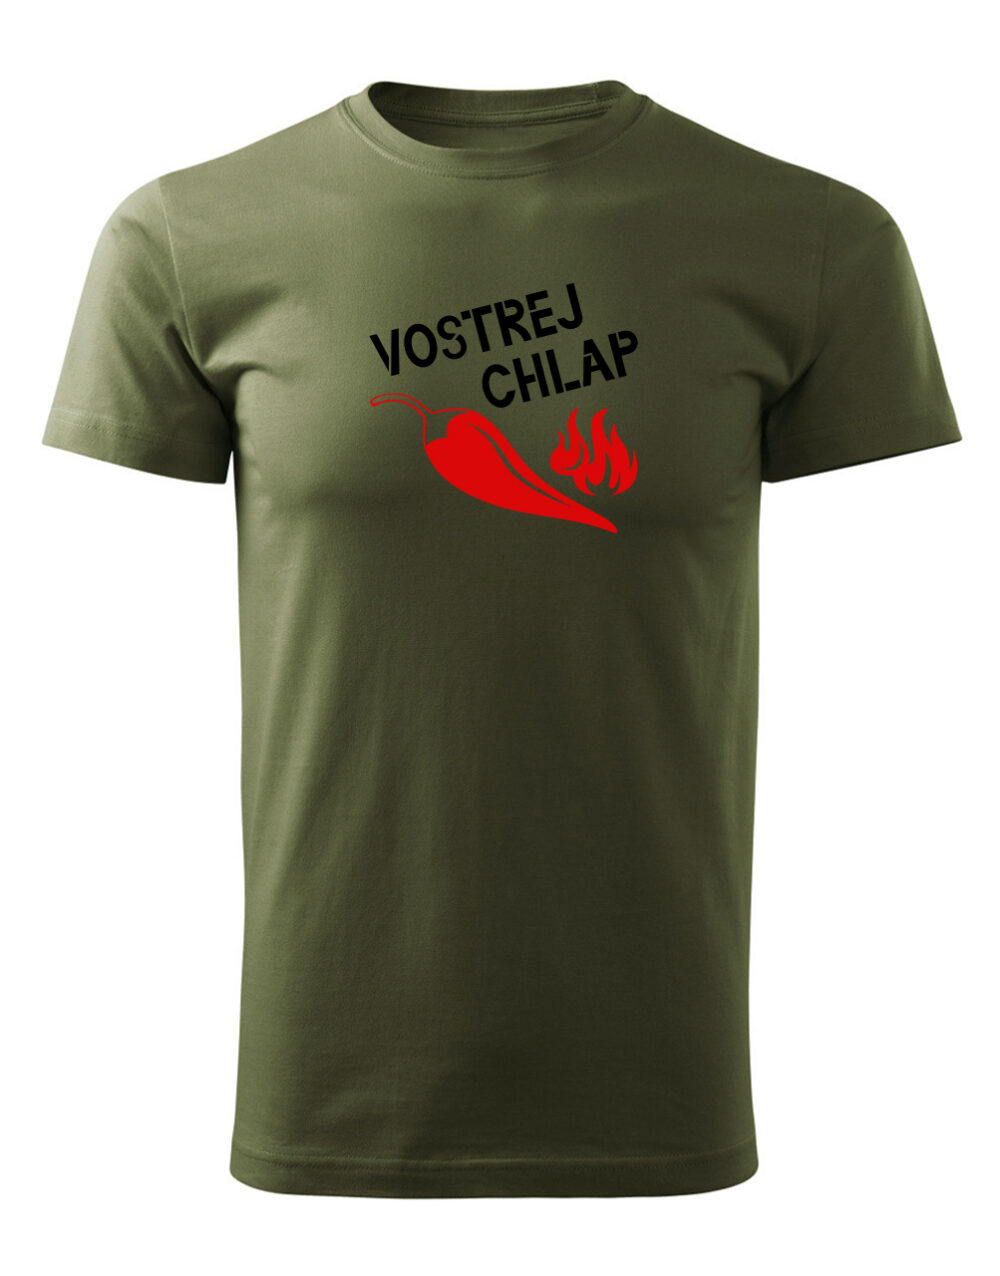 Pánské tričko s potiskem Vostrej chlap vojenská zelená